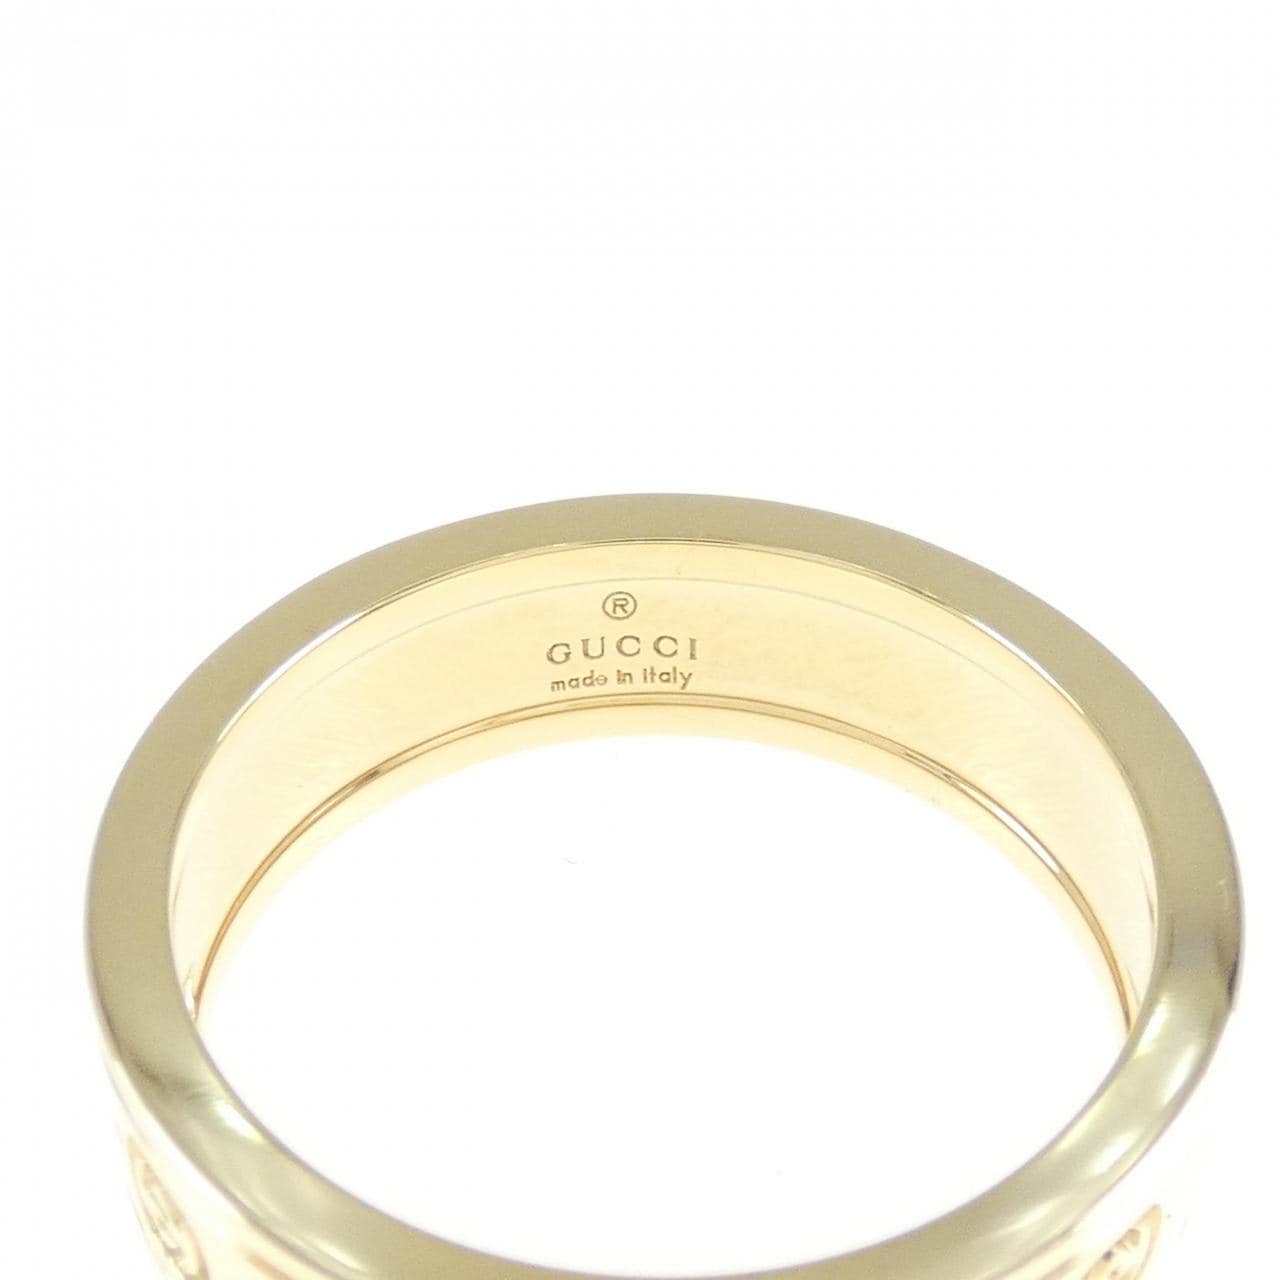 Gucci 750YG ring